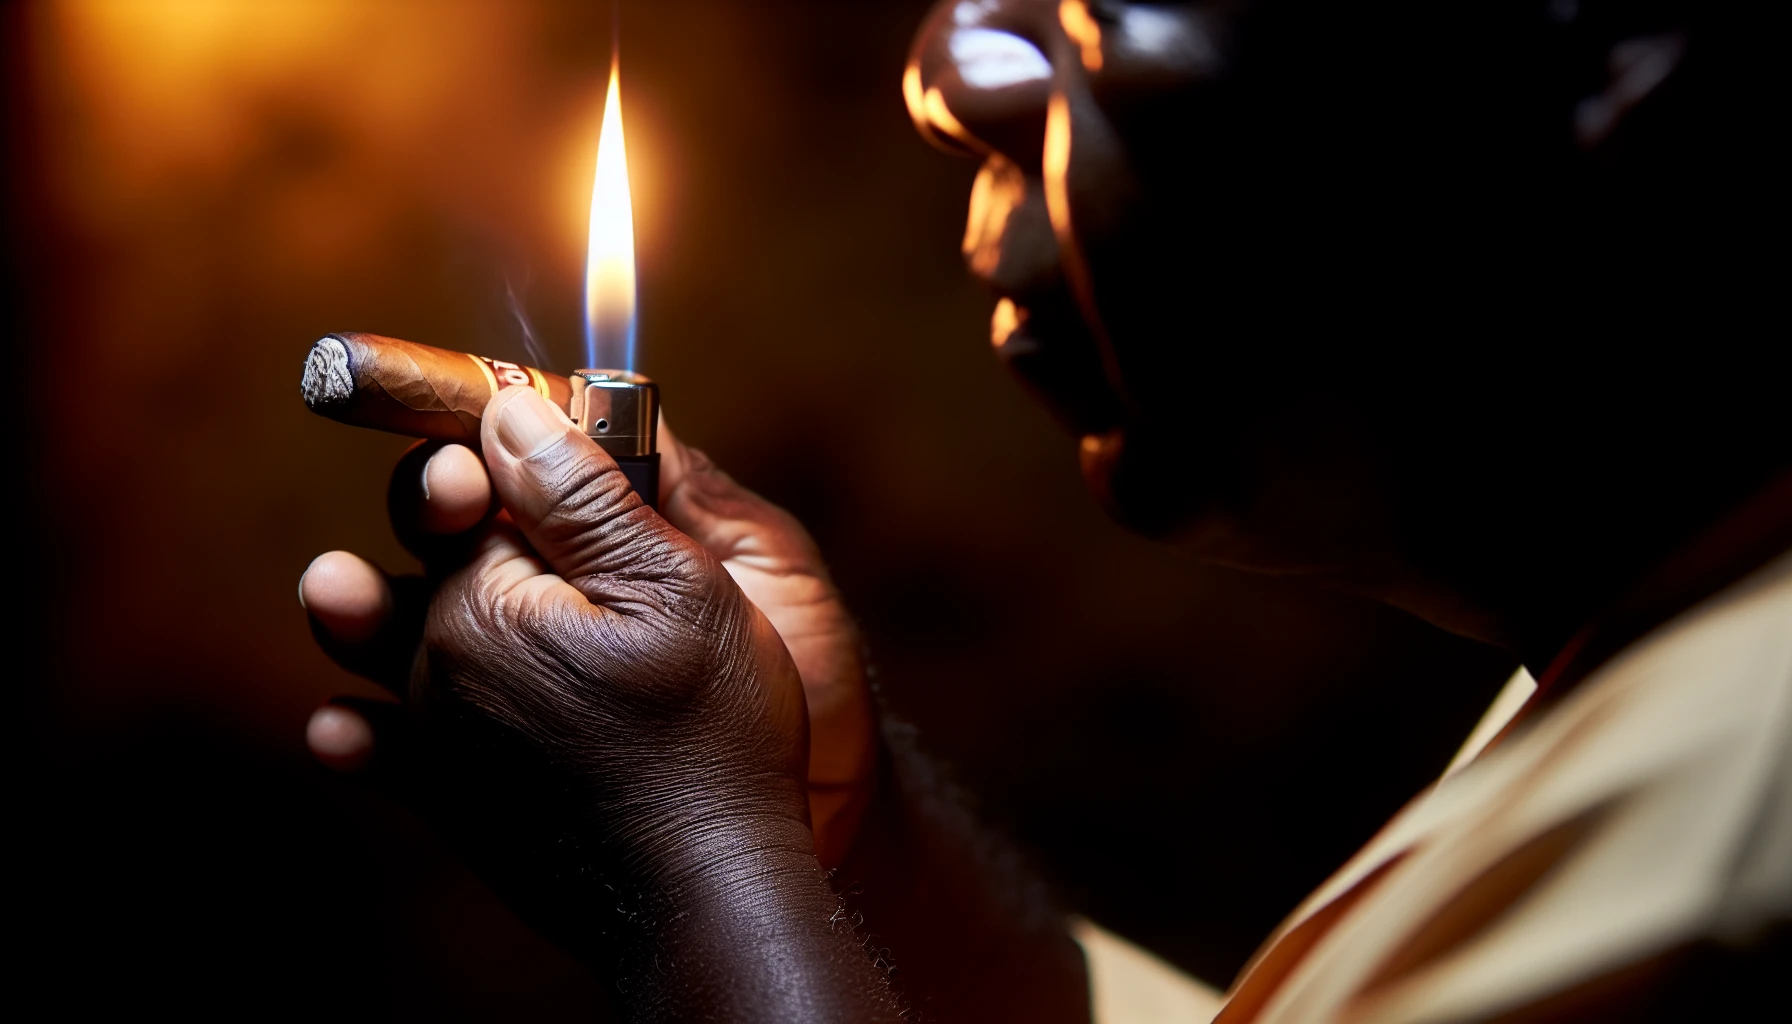 A person holding and lighting an AJ Fernandez Días de Gloria Toro cigar